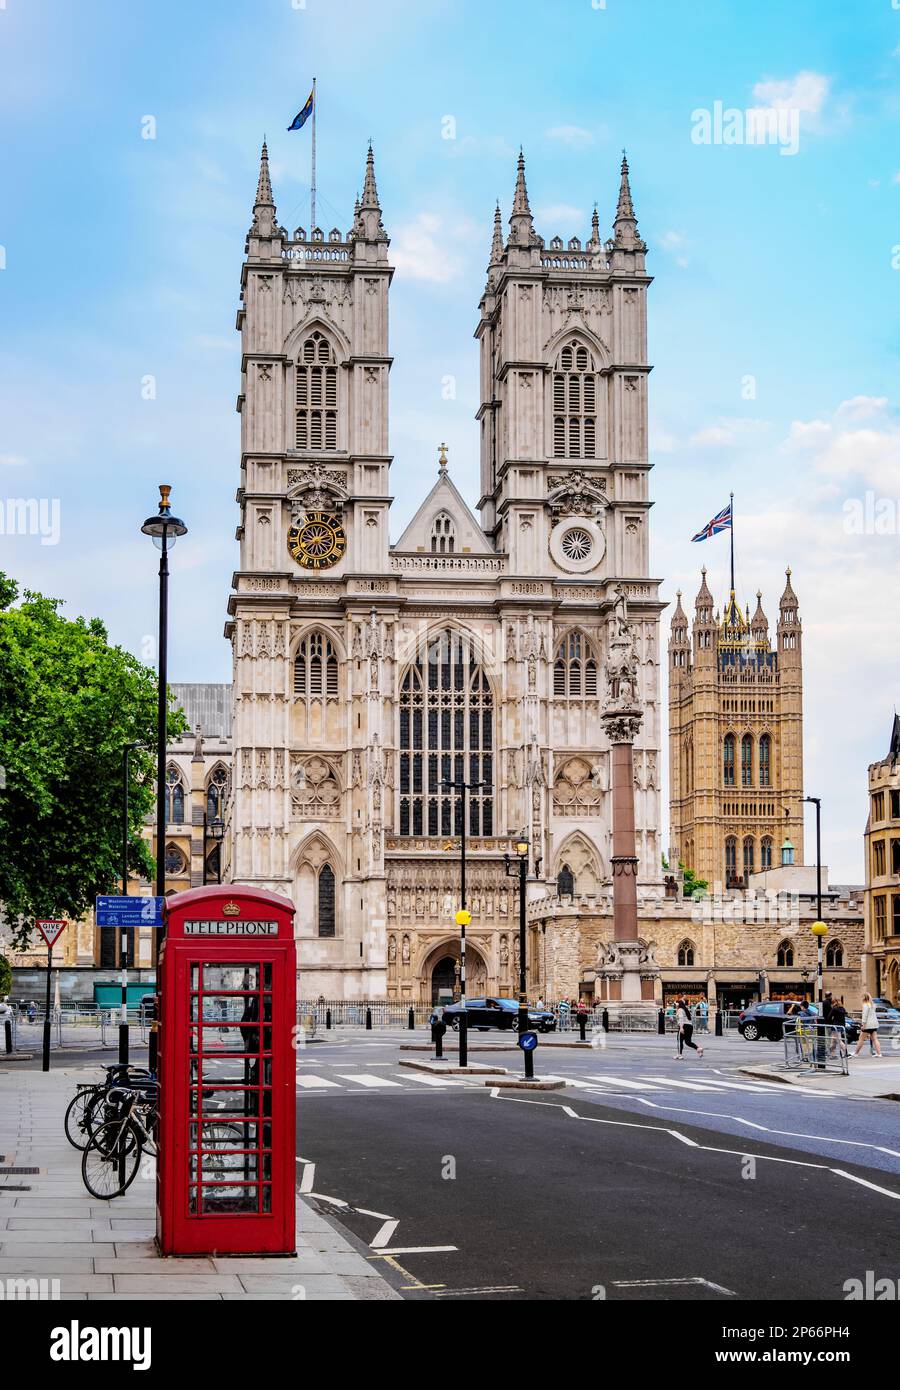 Red Telephone Box et Westminster Abbey, site classé au patrimoine mondial de l'UNESCO, Londres, Angleterre, Royaume-Uni, Europe Banque D'Images